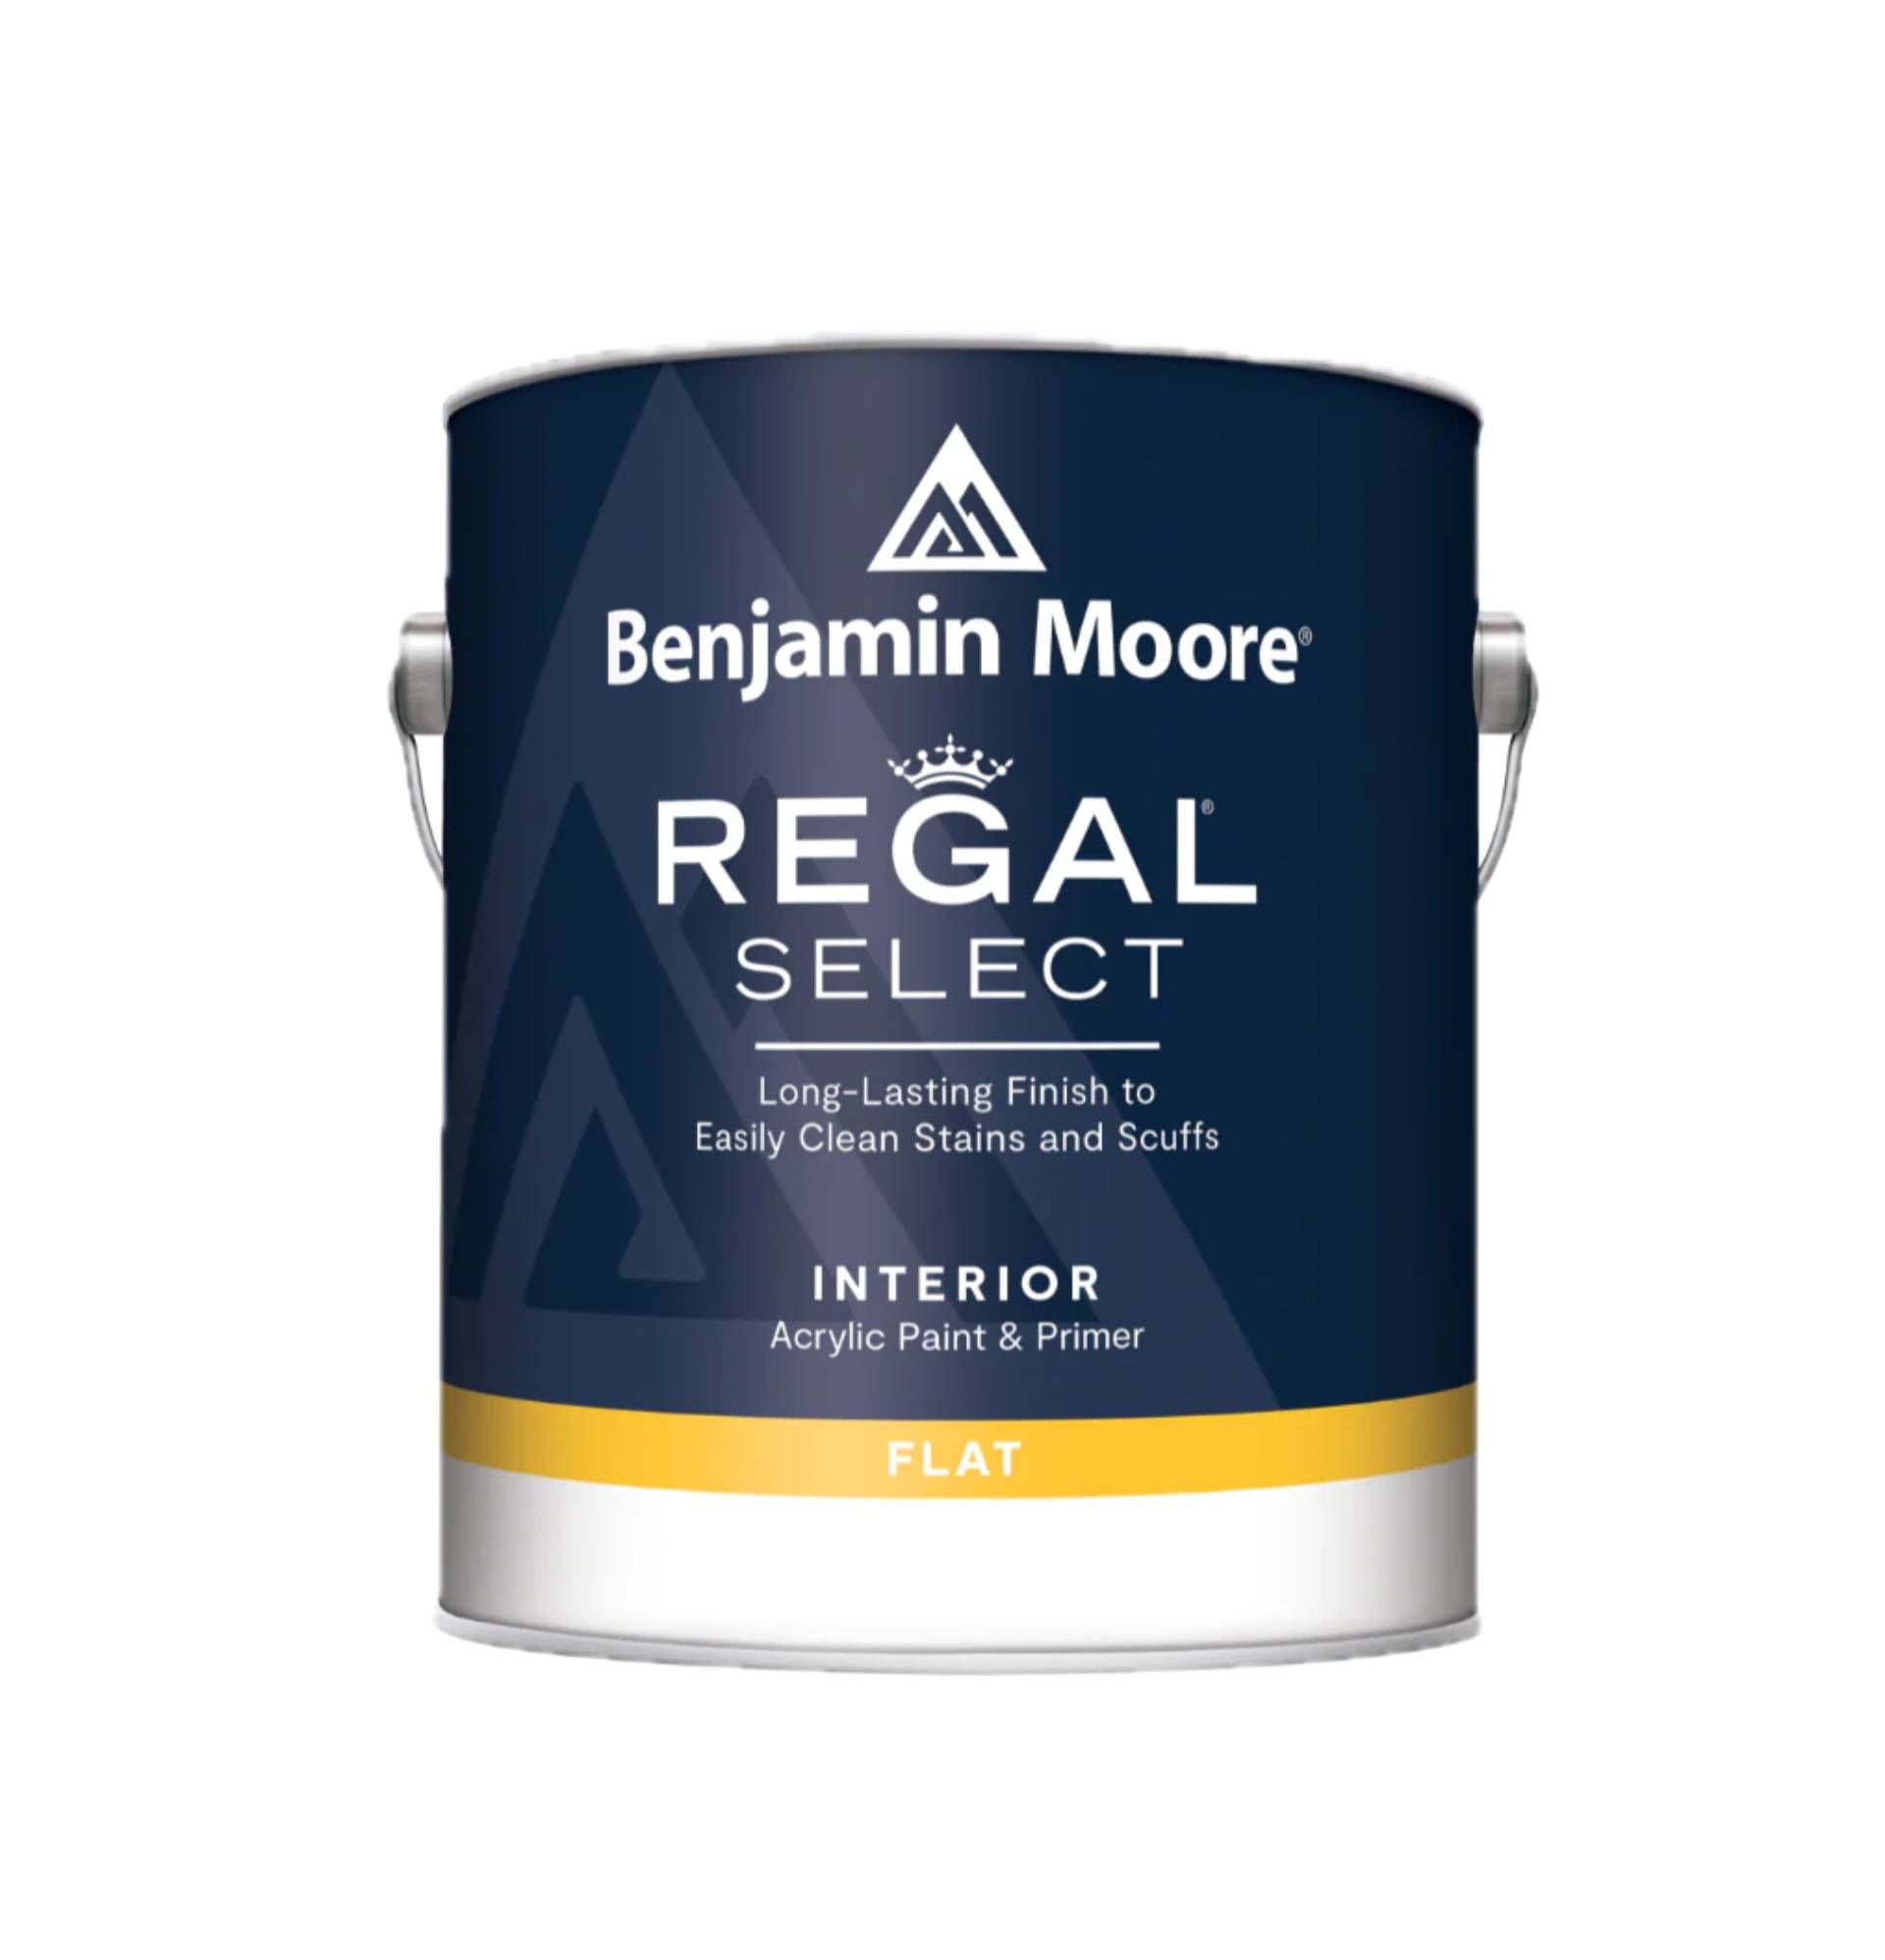 Benjamin Moore Regal® Select Interior Paint near Fort Lauderdale, Florida (FL)